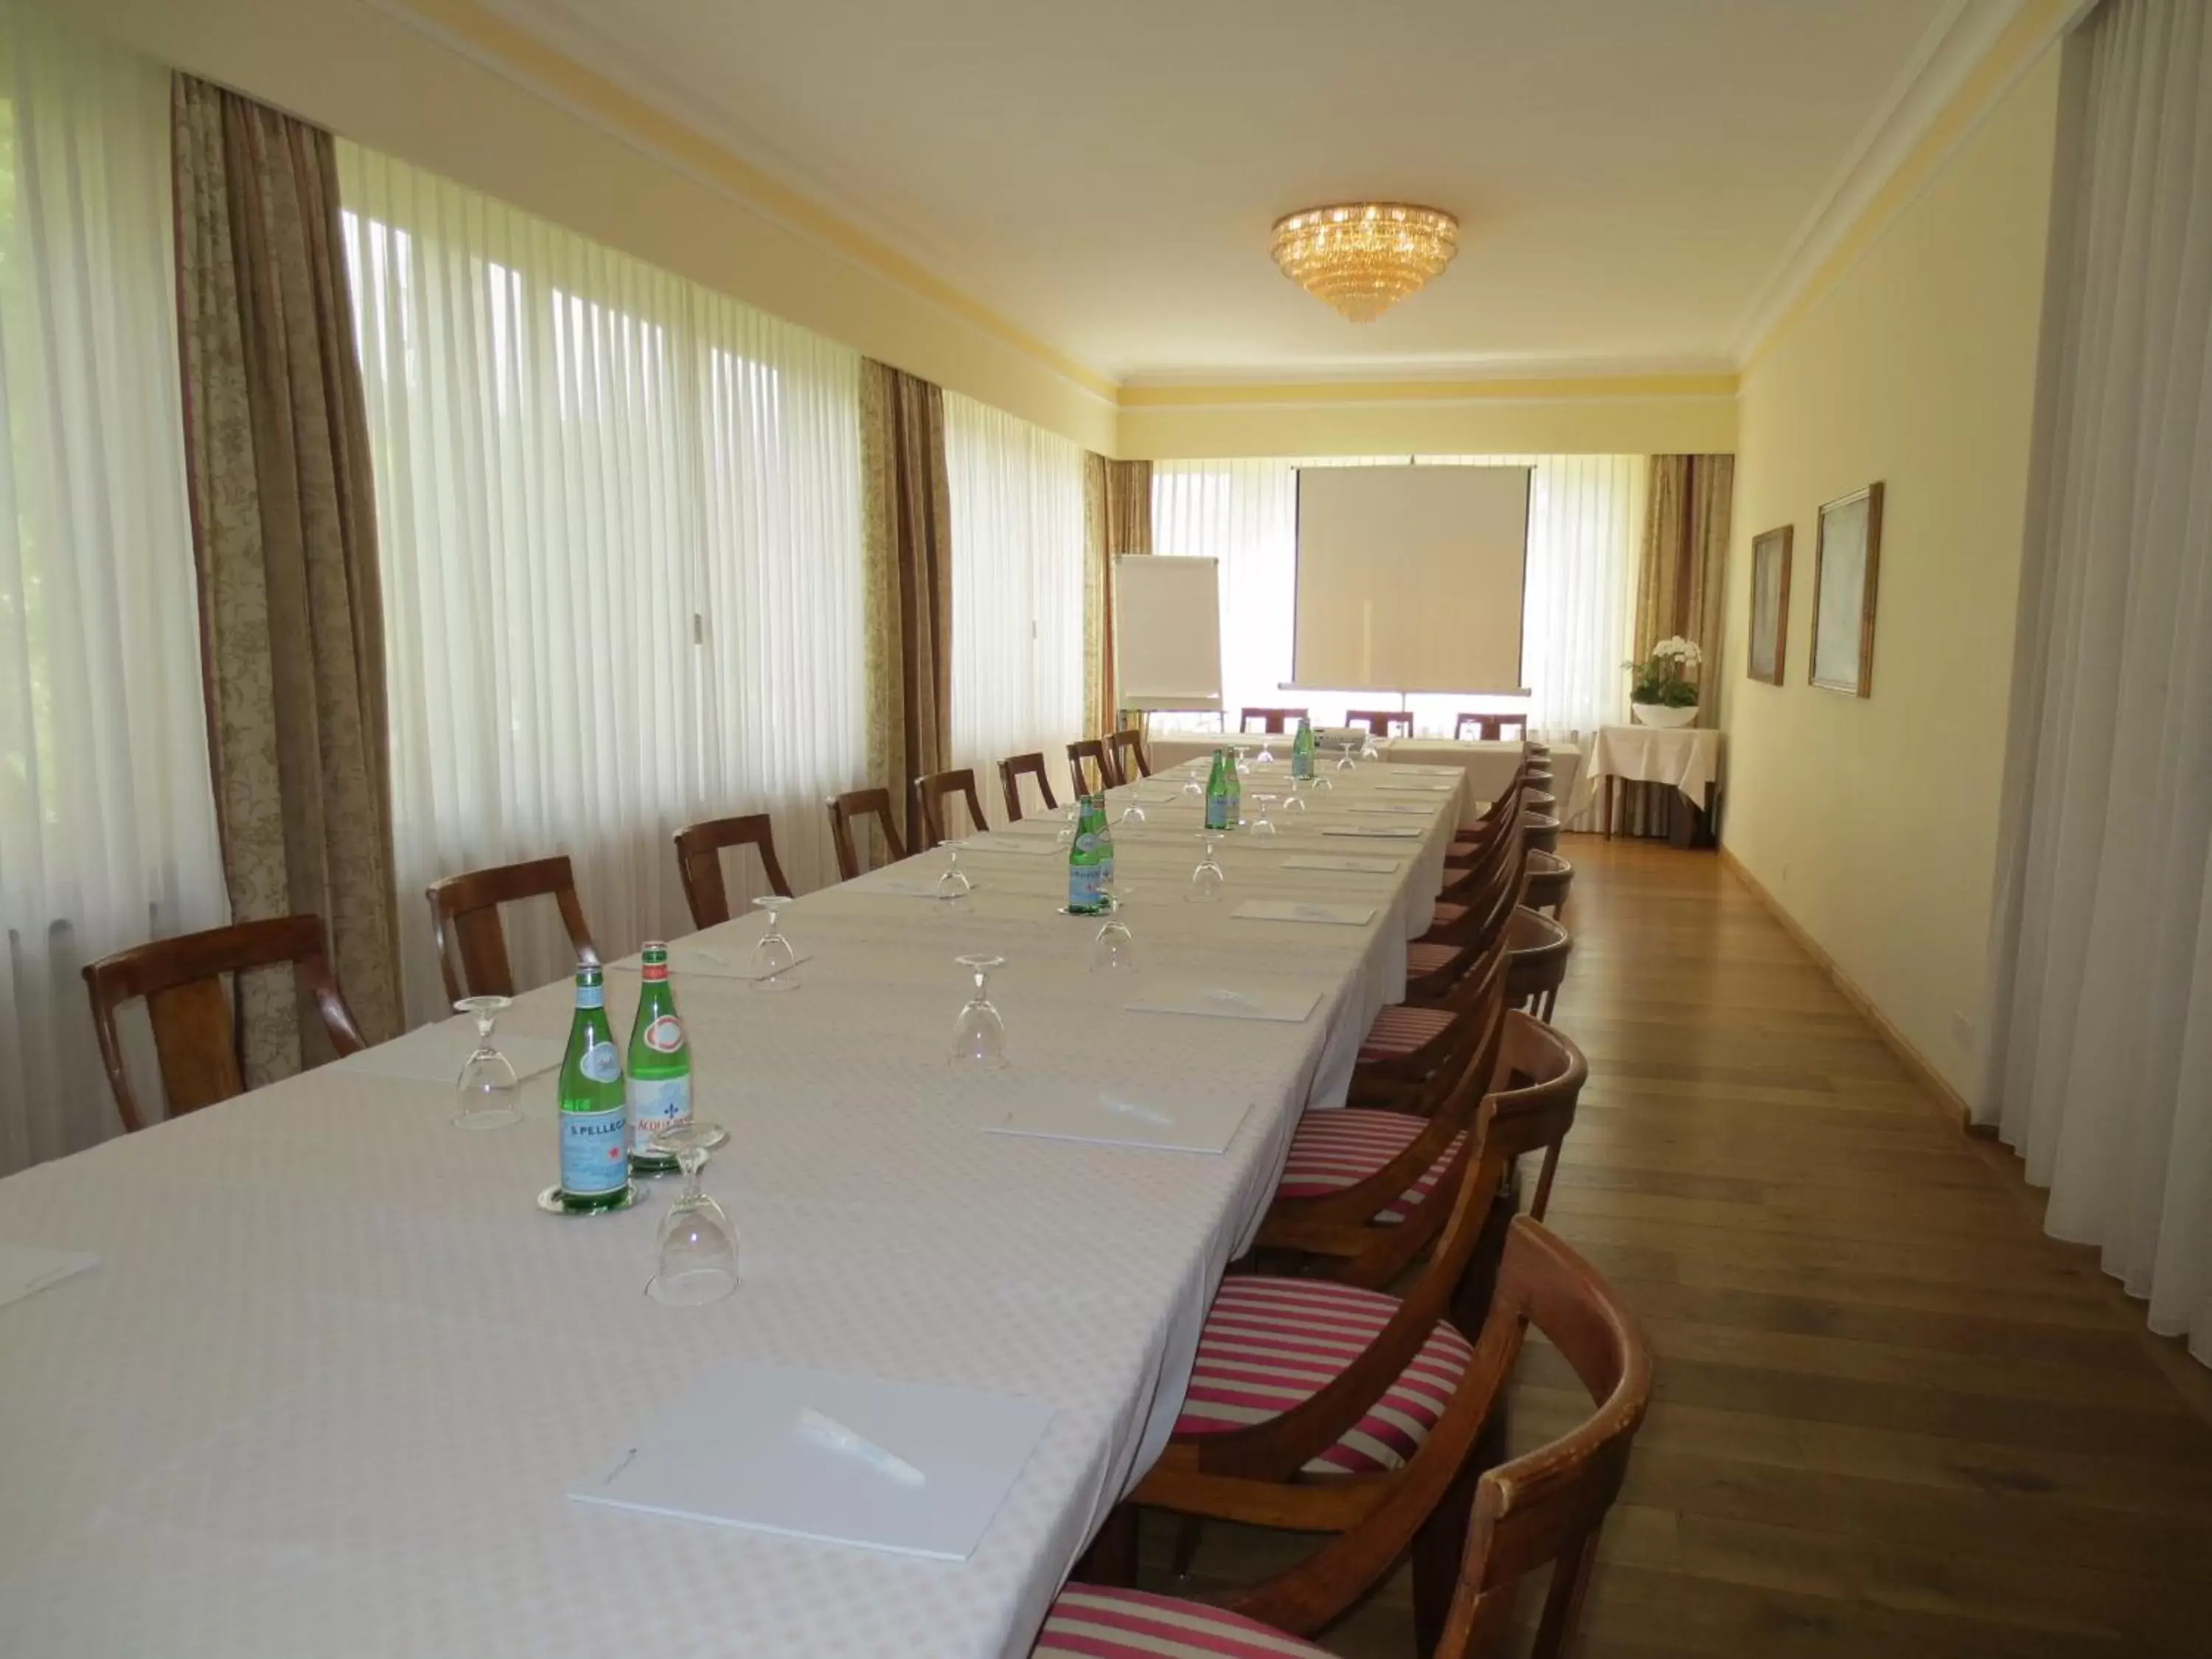 Banquet/Function facilities in Romantik Hotel Castello Seeschloss